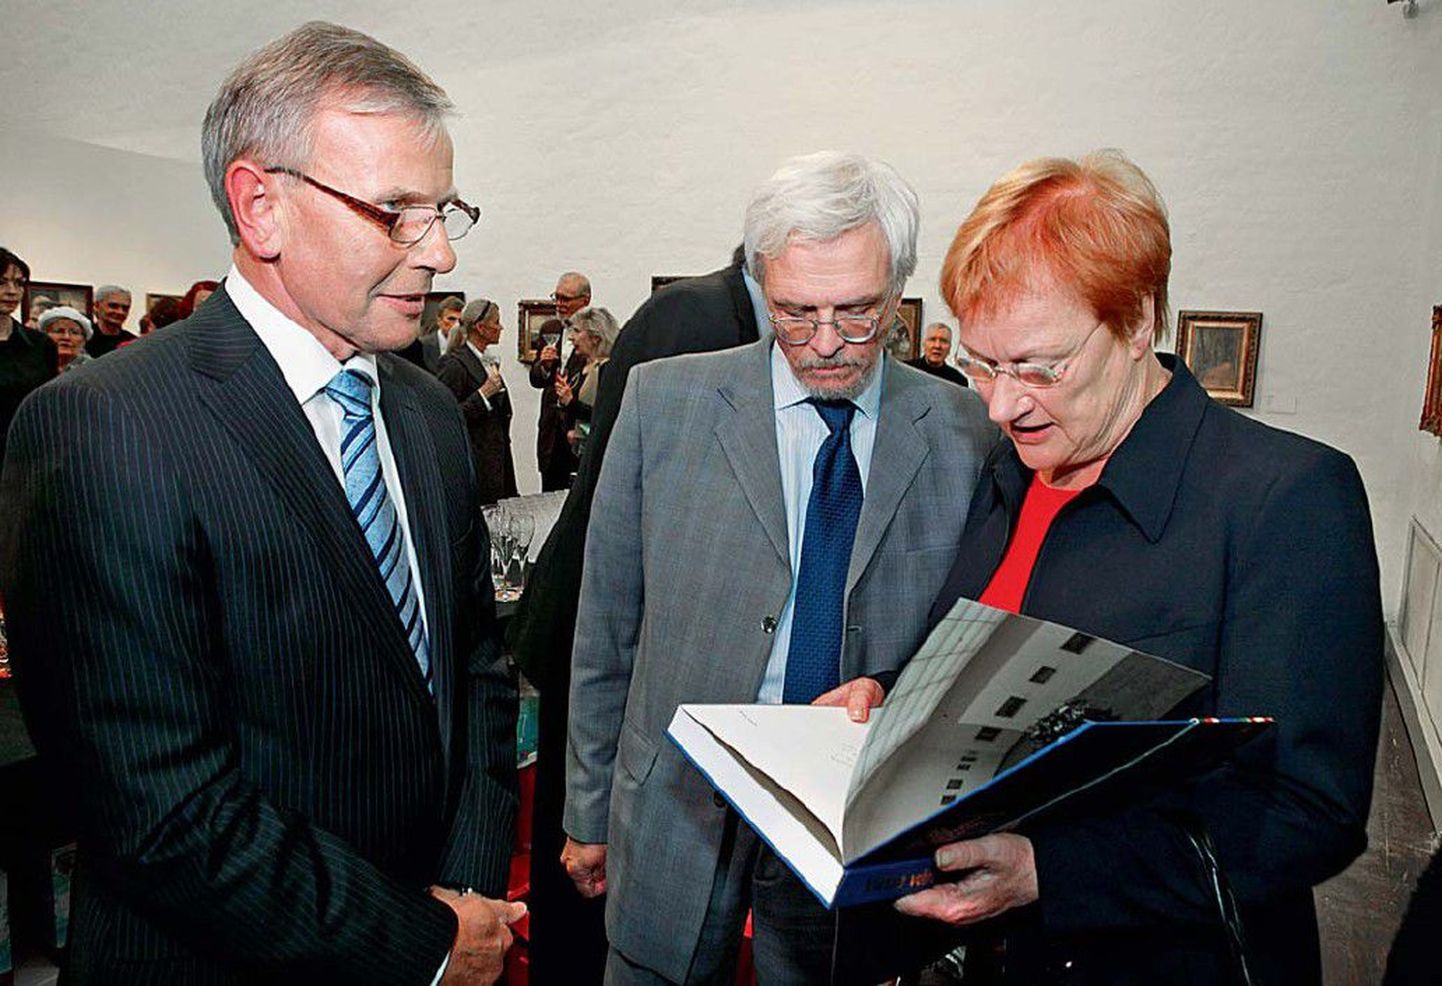 Ettevõtja Enn Kunila (vasakul) maalikogu väljapanek Helsingis oli üle 70 aasta esimene Eesti kunsti ülevaatenäitus Soomes, näituse avamist austas ka põhjanaabrite president Tarja Halonen koos abikaasa Pentti Arajärviga.